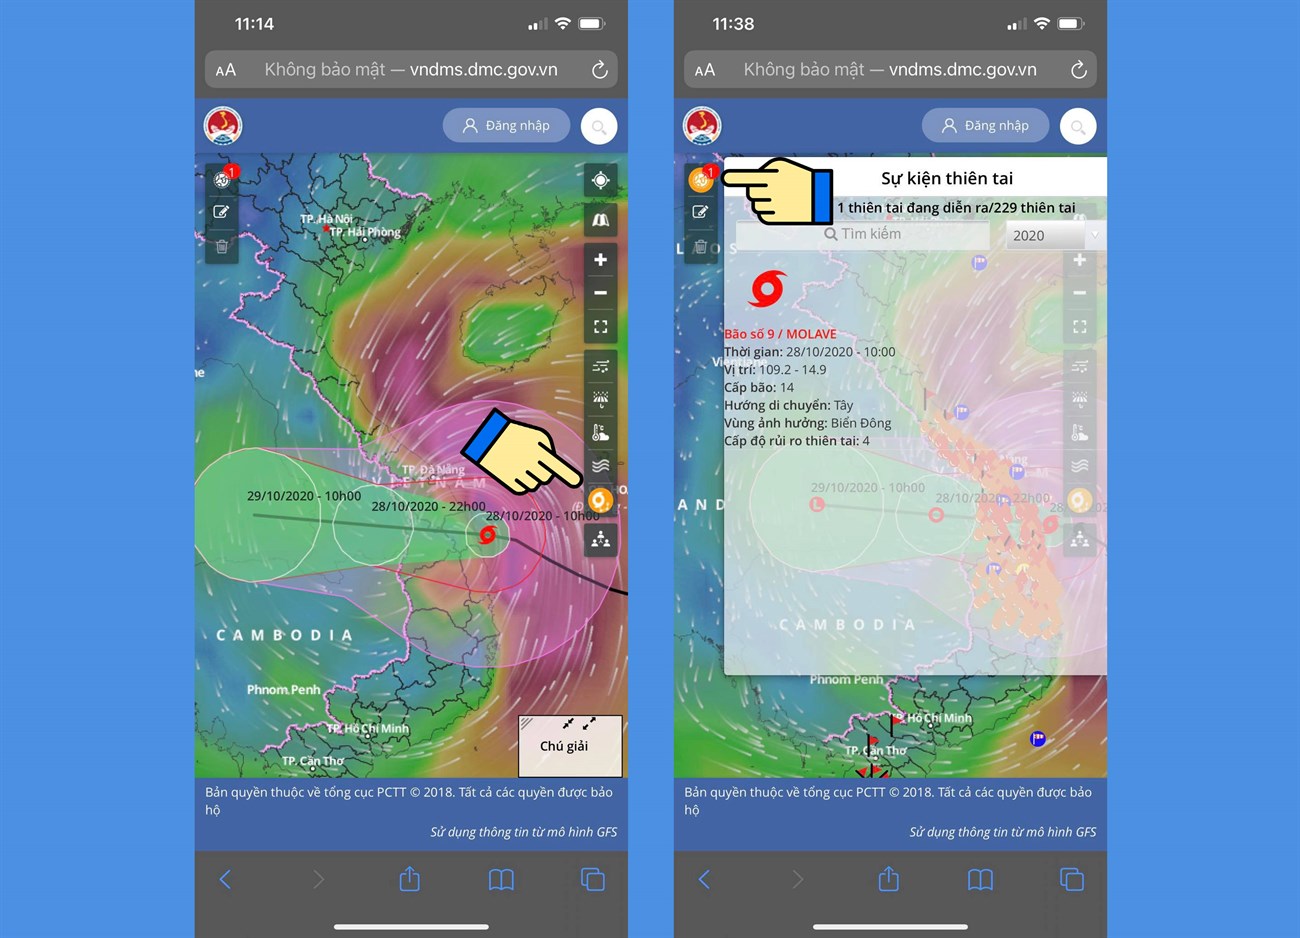 Cách xem bản đồ dự báo thời tiết, bão lũ, thiên tai Việt Nam trực tiếp qua vệ tinh > Xem hướng đi của bão và thiên tai sắp xảy ra